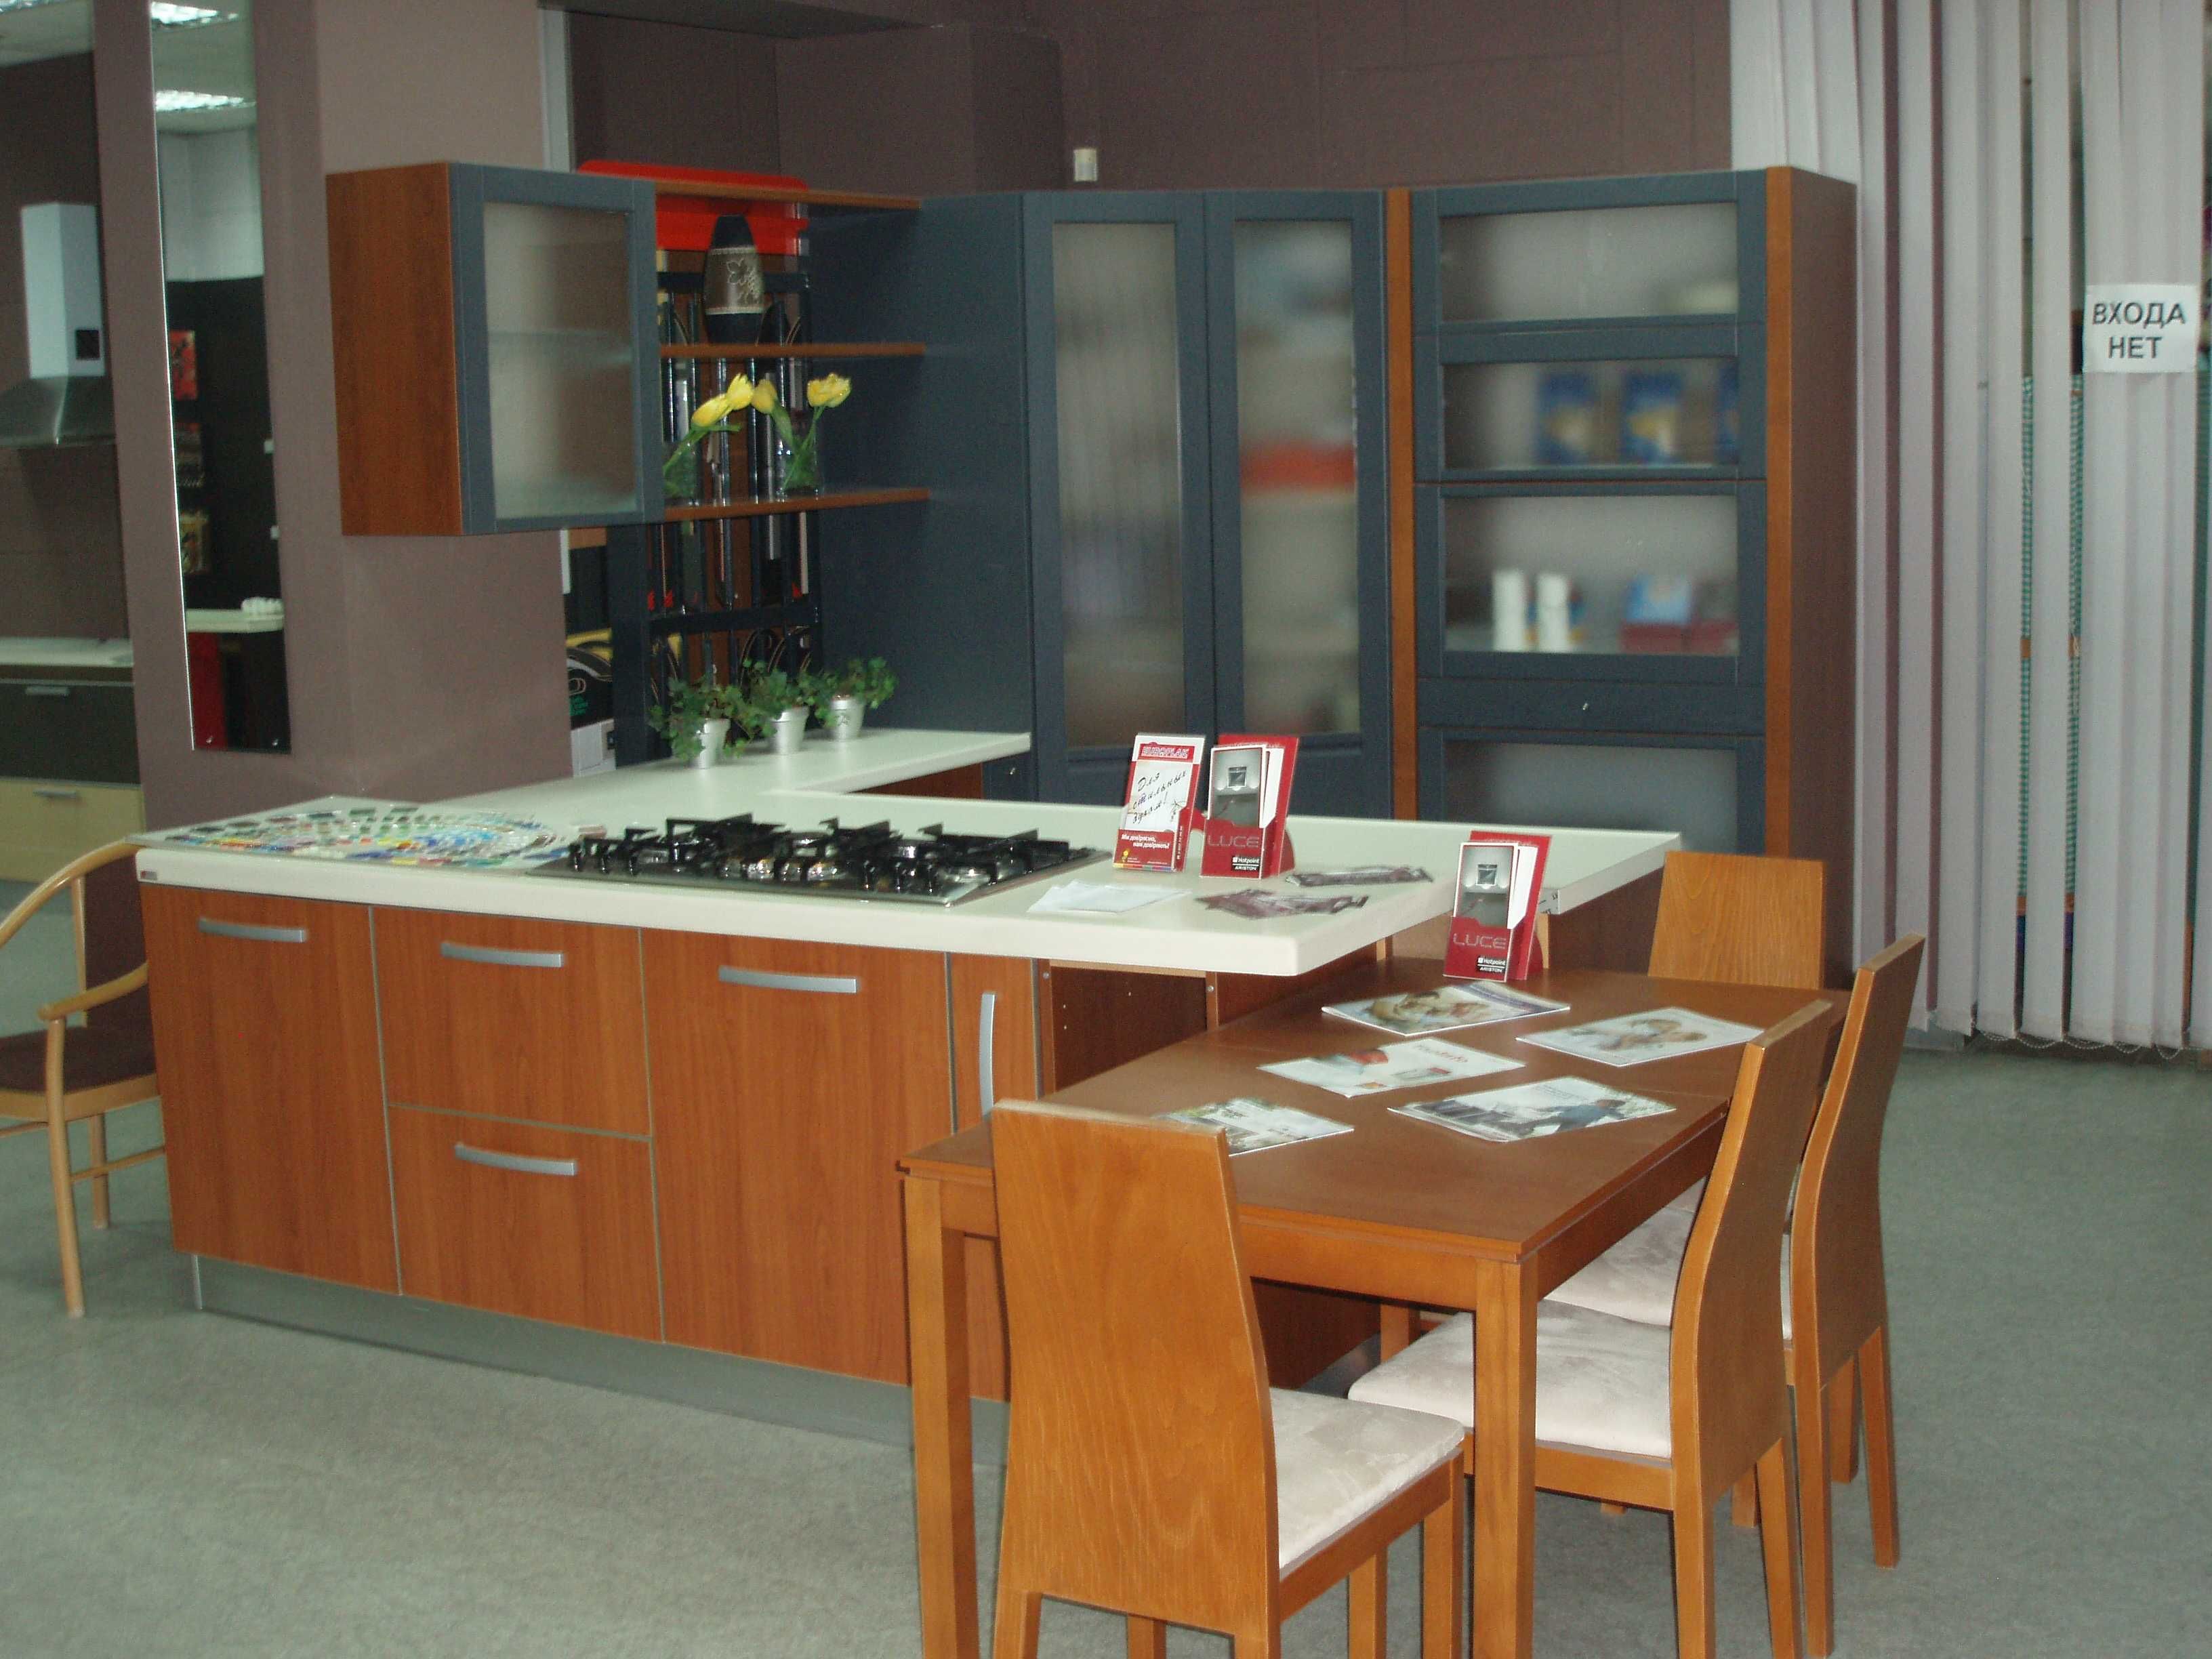 Мебель для столовой, кухни (стол, 4 стула). Производство Польша.